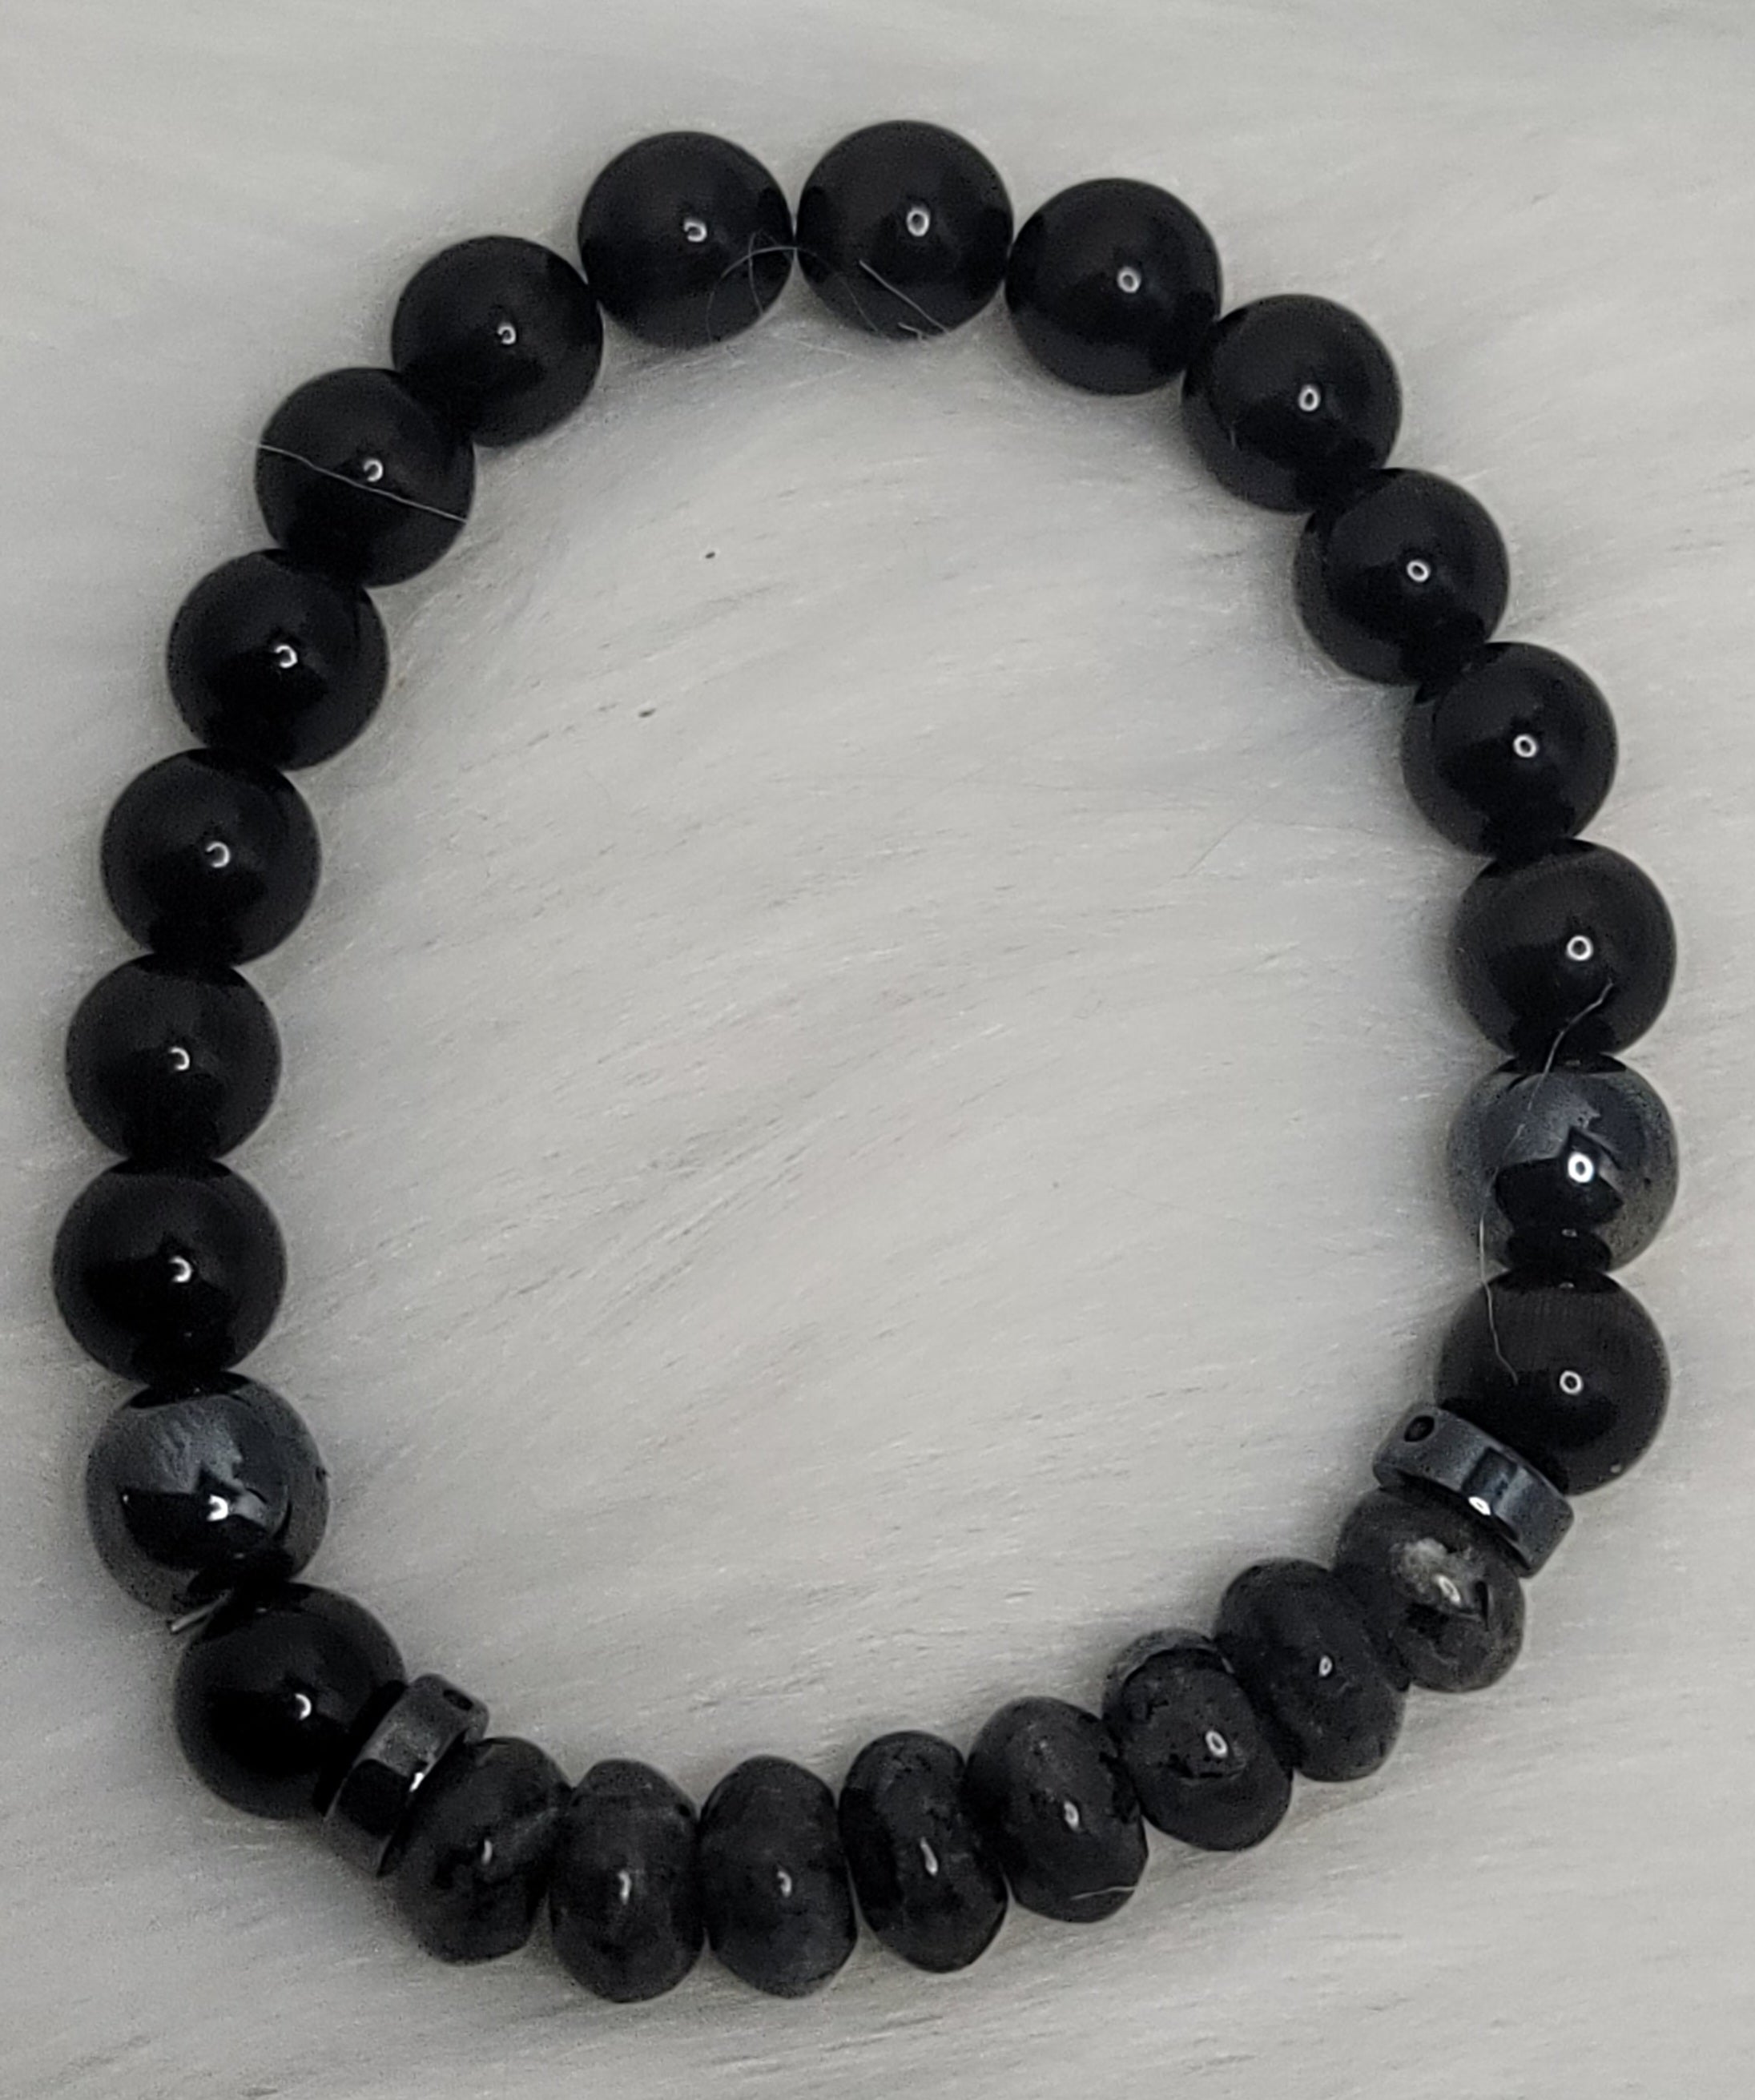 Does Feng Shui Black Obsidian Wealth Bracelet Work? - Beadnova